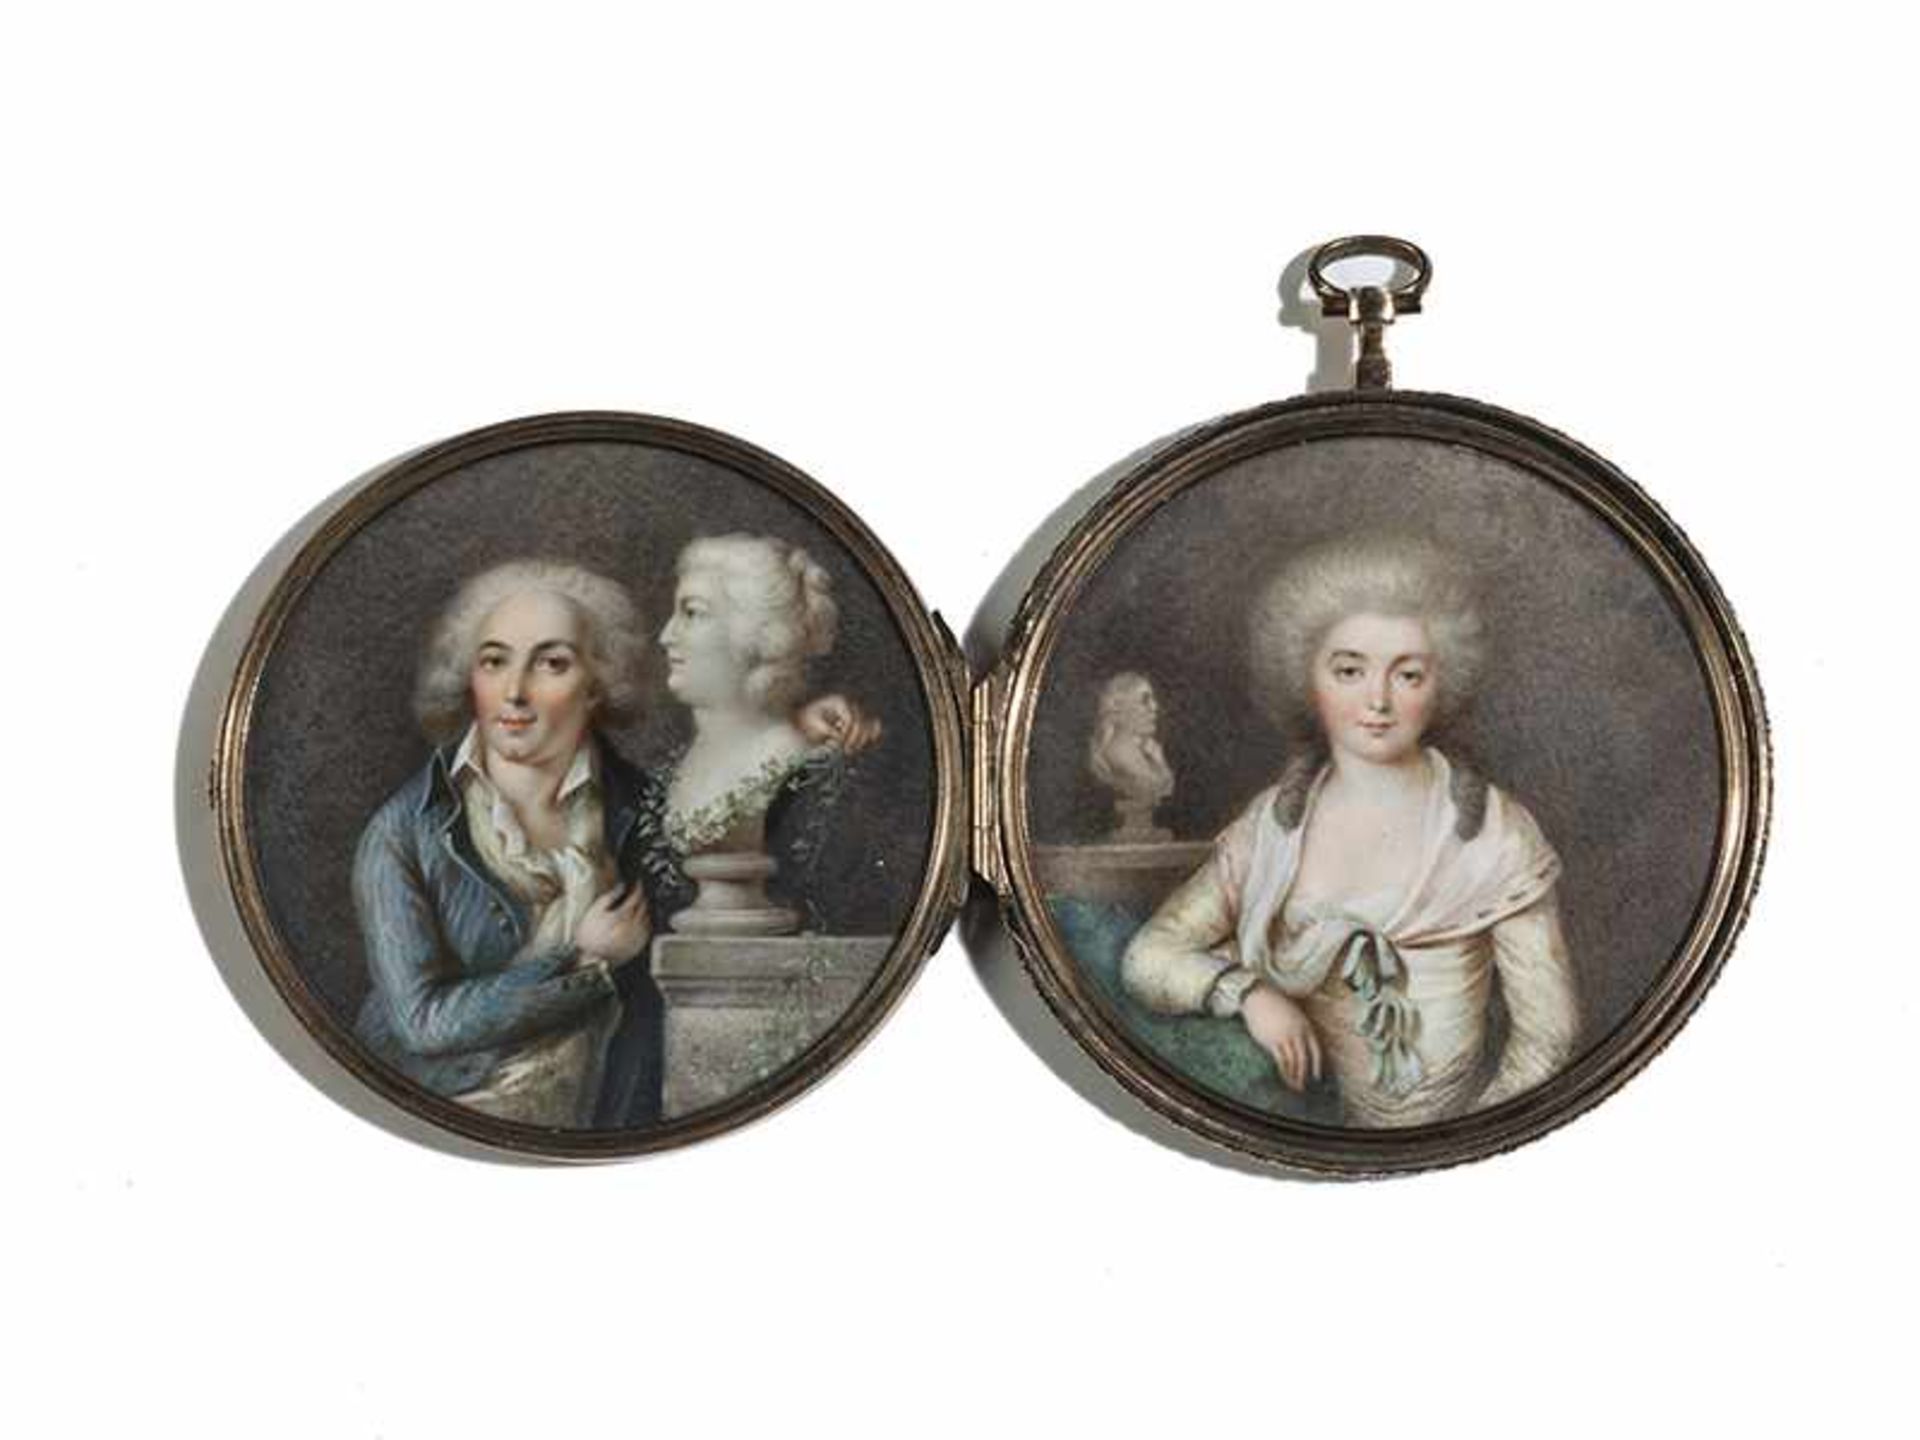 DoppelminiaturDurchmesser: 7,5 cm. Signiert "Hall" für Pierre Adolphe Hall (1739-1793). In einer